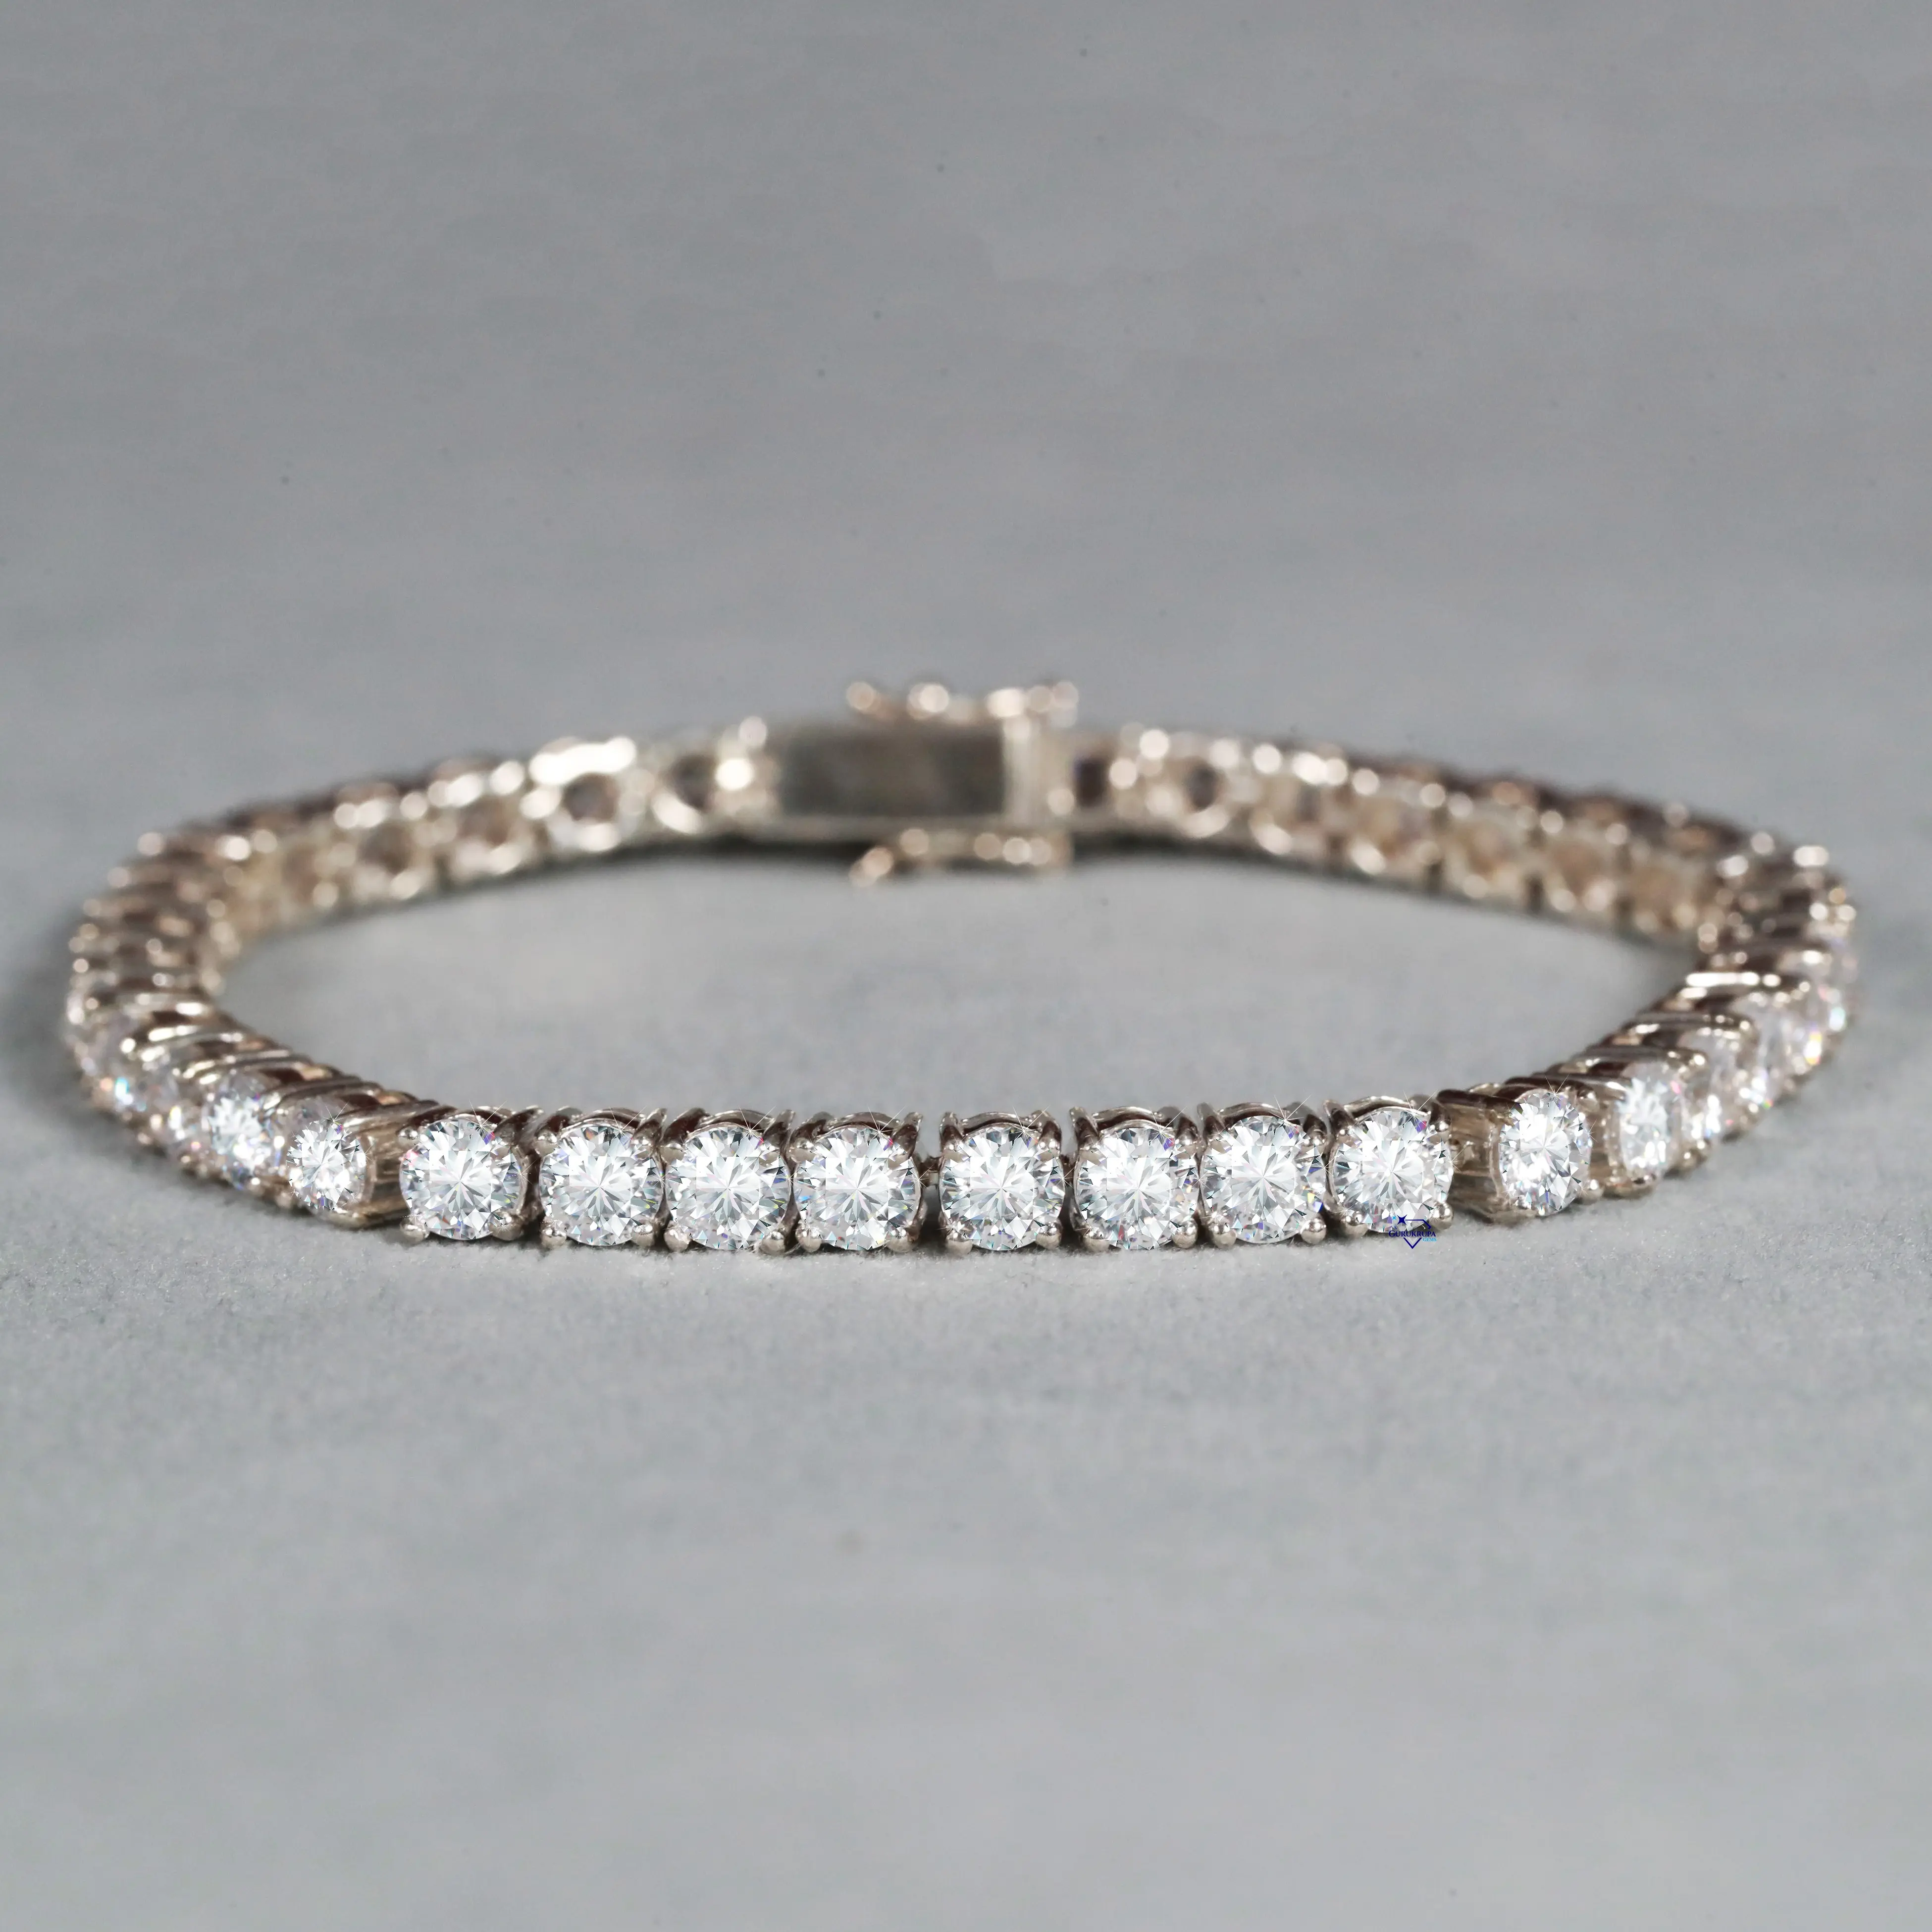 Prachtige Lab Gegroeid Rond Briljant Geslepen Diamanten Tennisarmband In 925 Sterling Zilver Met Een Geweldige Mooie Look En Design